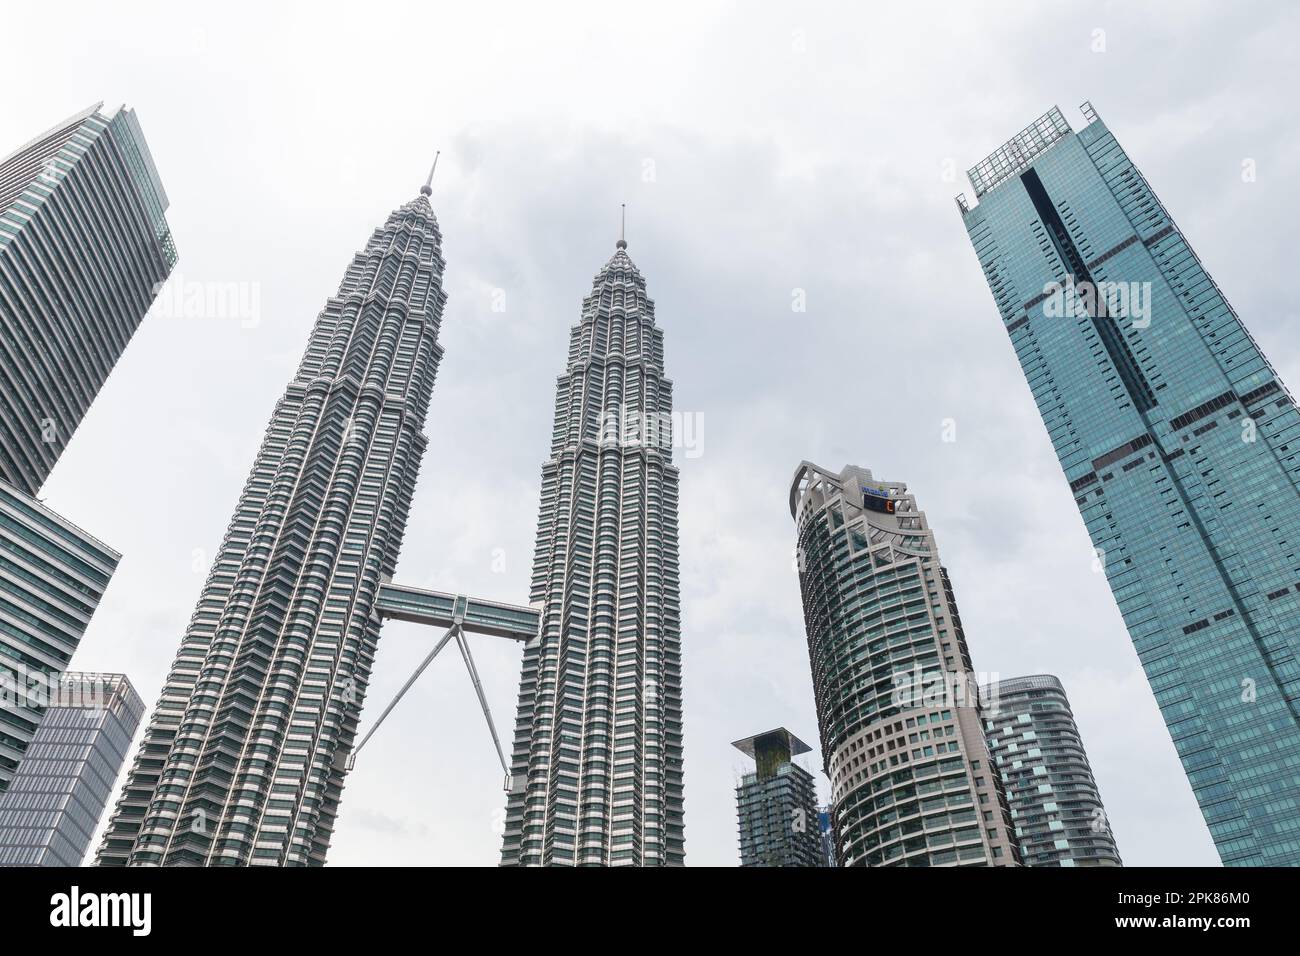 Kuala Lumpur, Malaisie - 25 novembre 2019 : gratte-ciel de la ville avec tours jumelles Petronas Banque D'Images